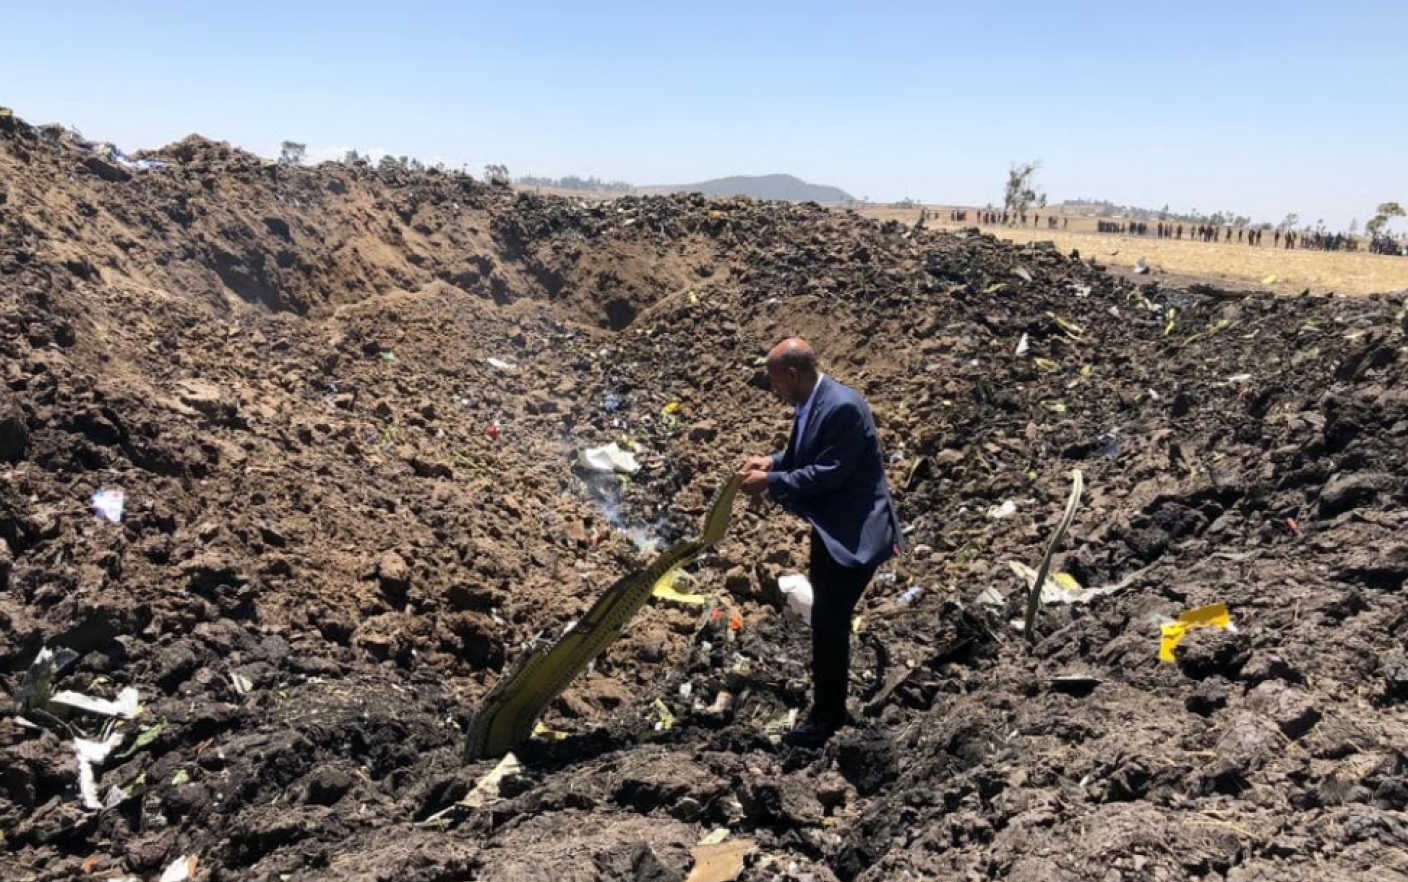 Prima imagine de la locul în care s-a prăbușit avionul companiei Ethiopian Airlines, în care se aflau 157 de persoane